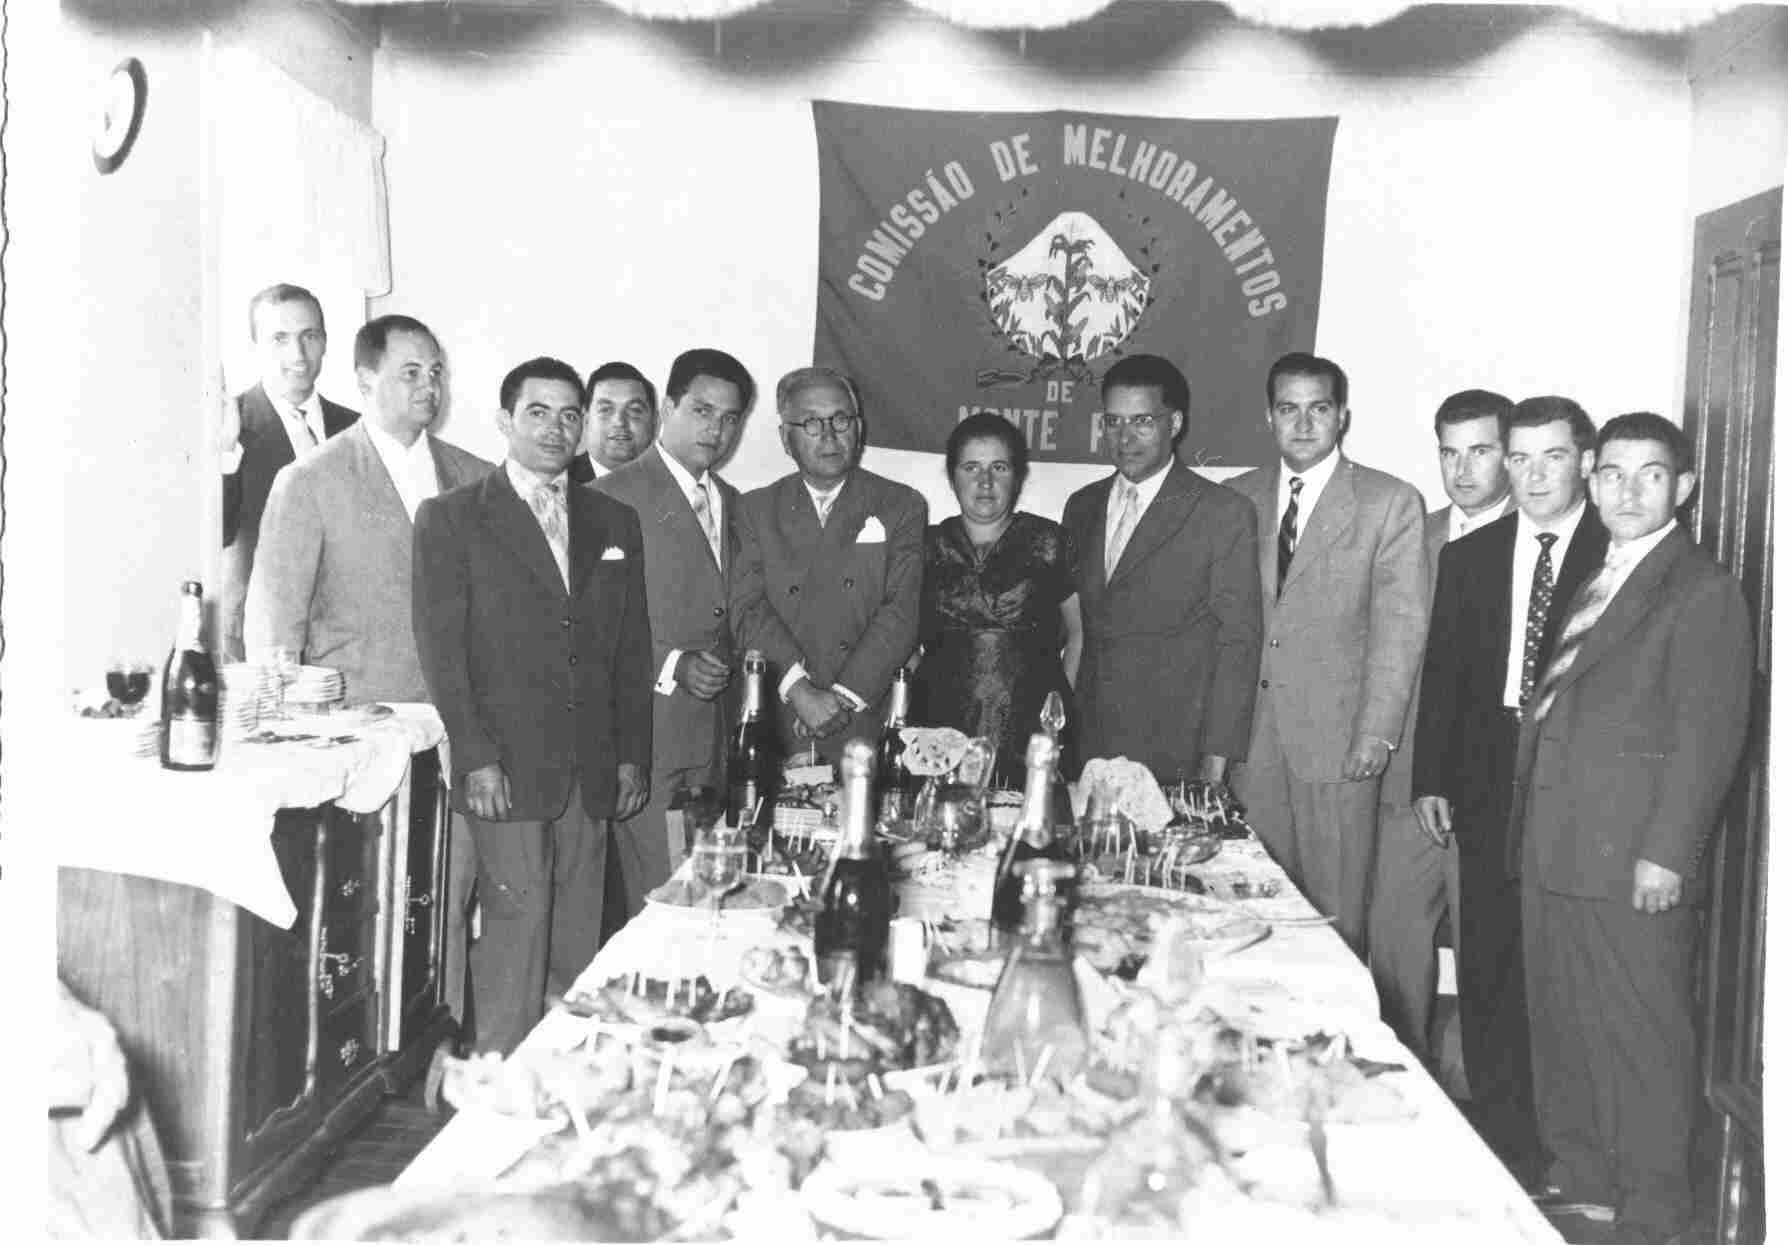 Banquete da Comissão de Melhoramentos na Sexta-feira, 12 de Agosto de 1960